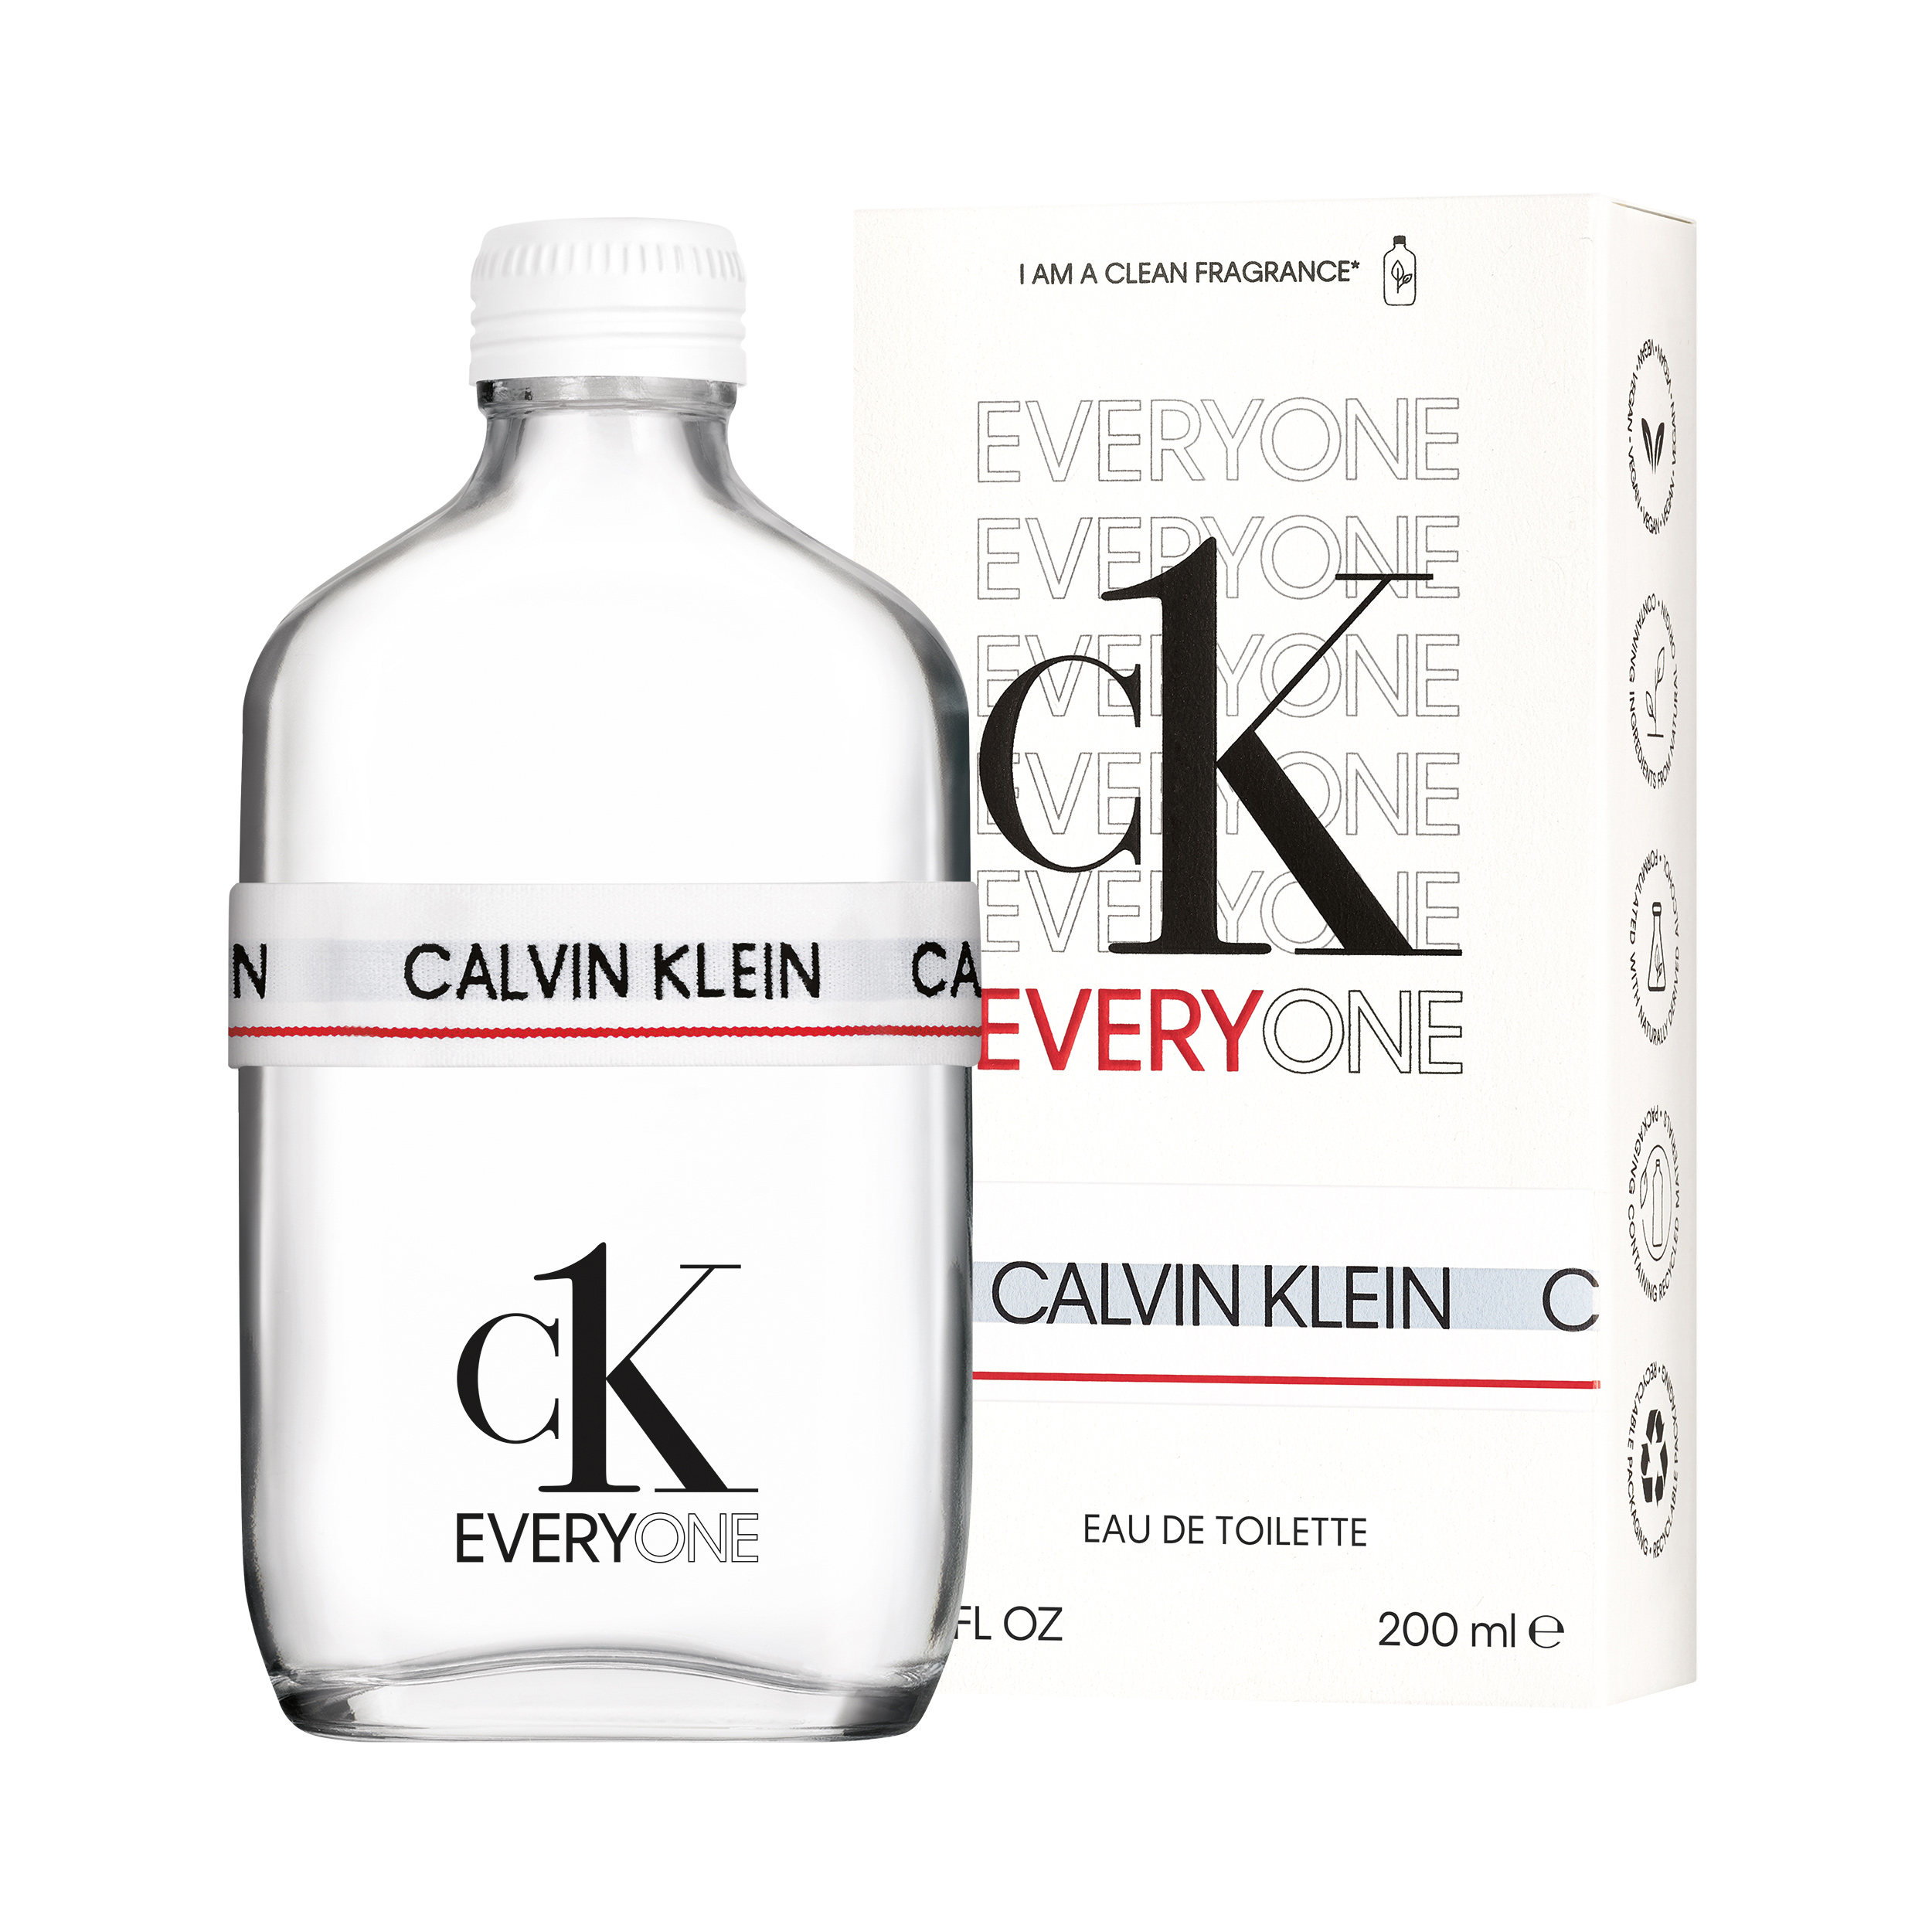 Calvin Klein lanza fragancia de lujo y vegana